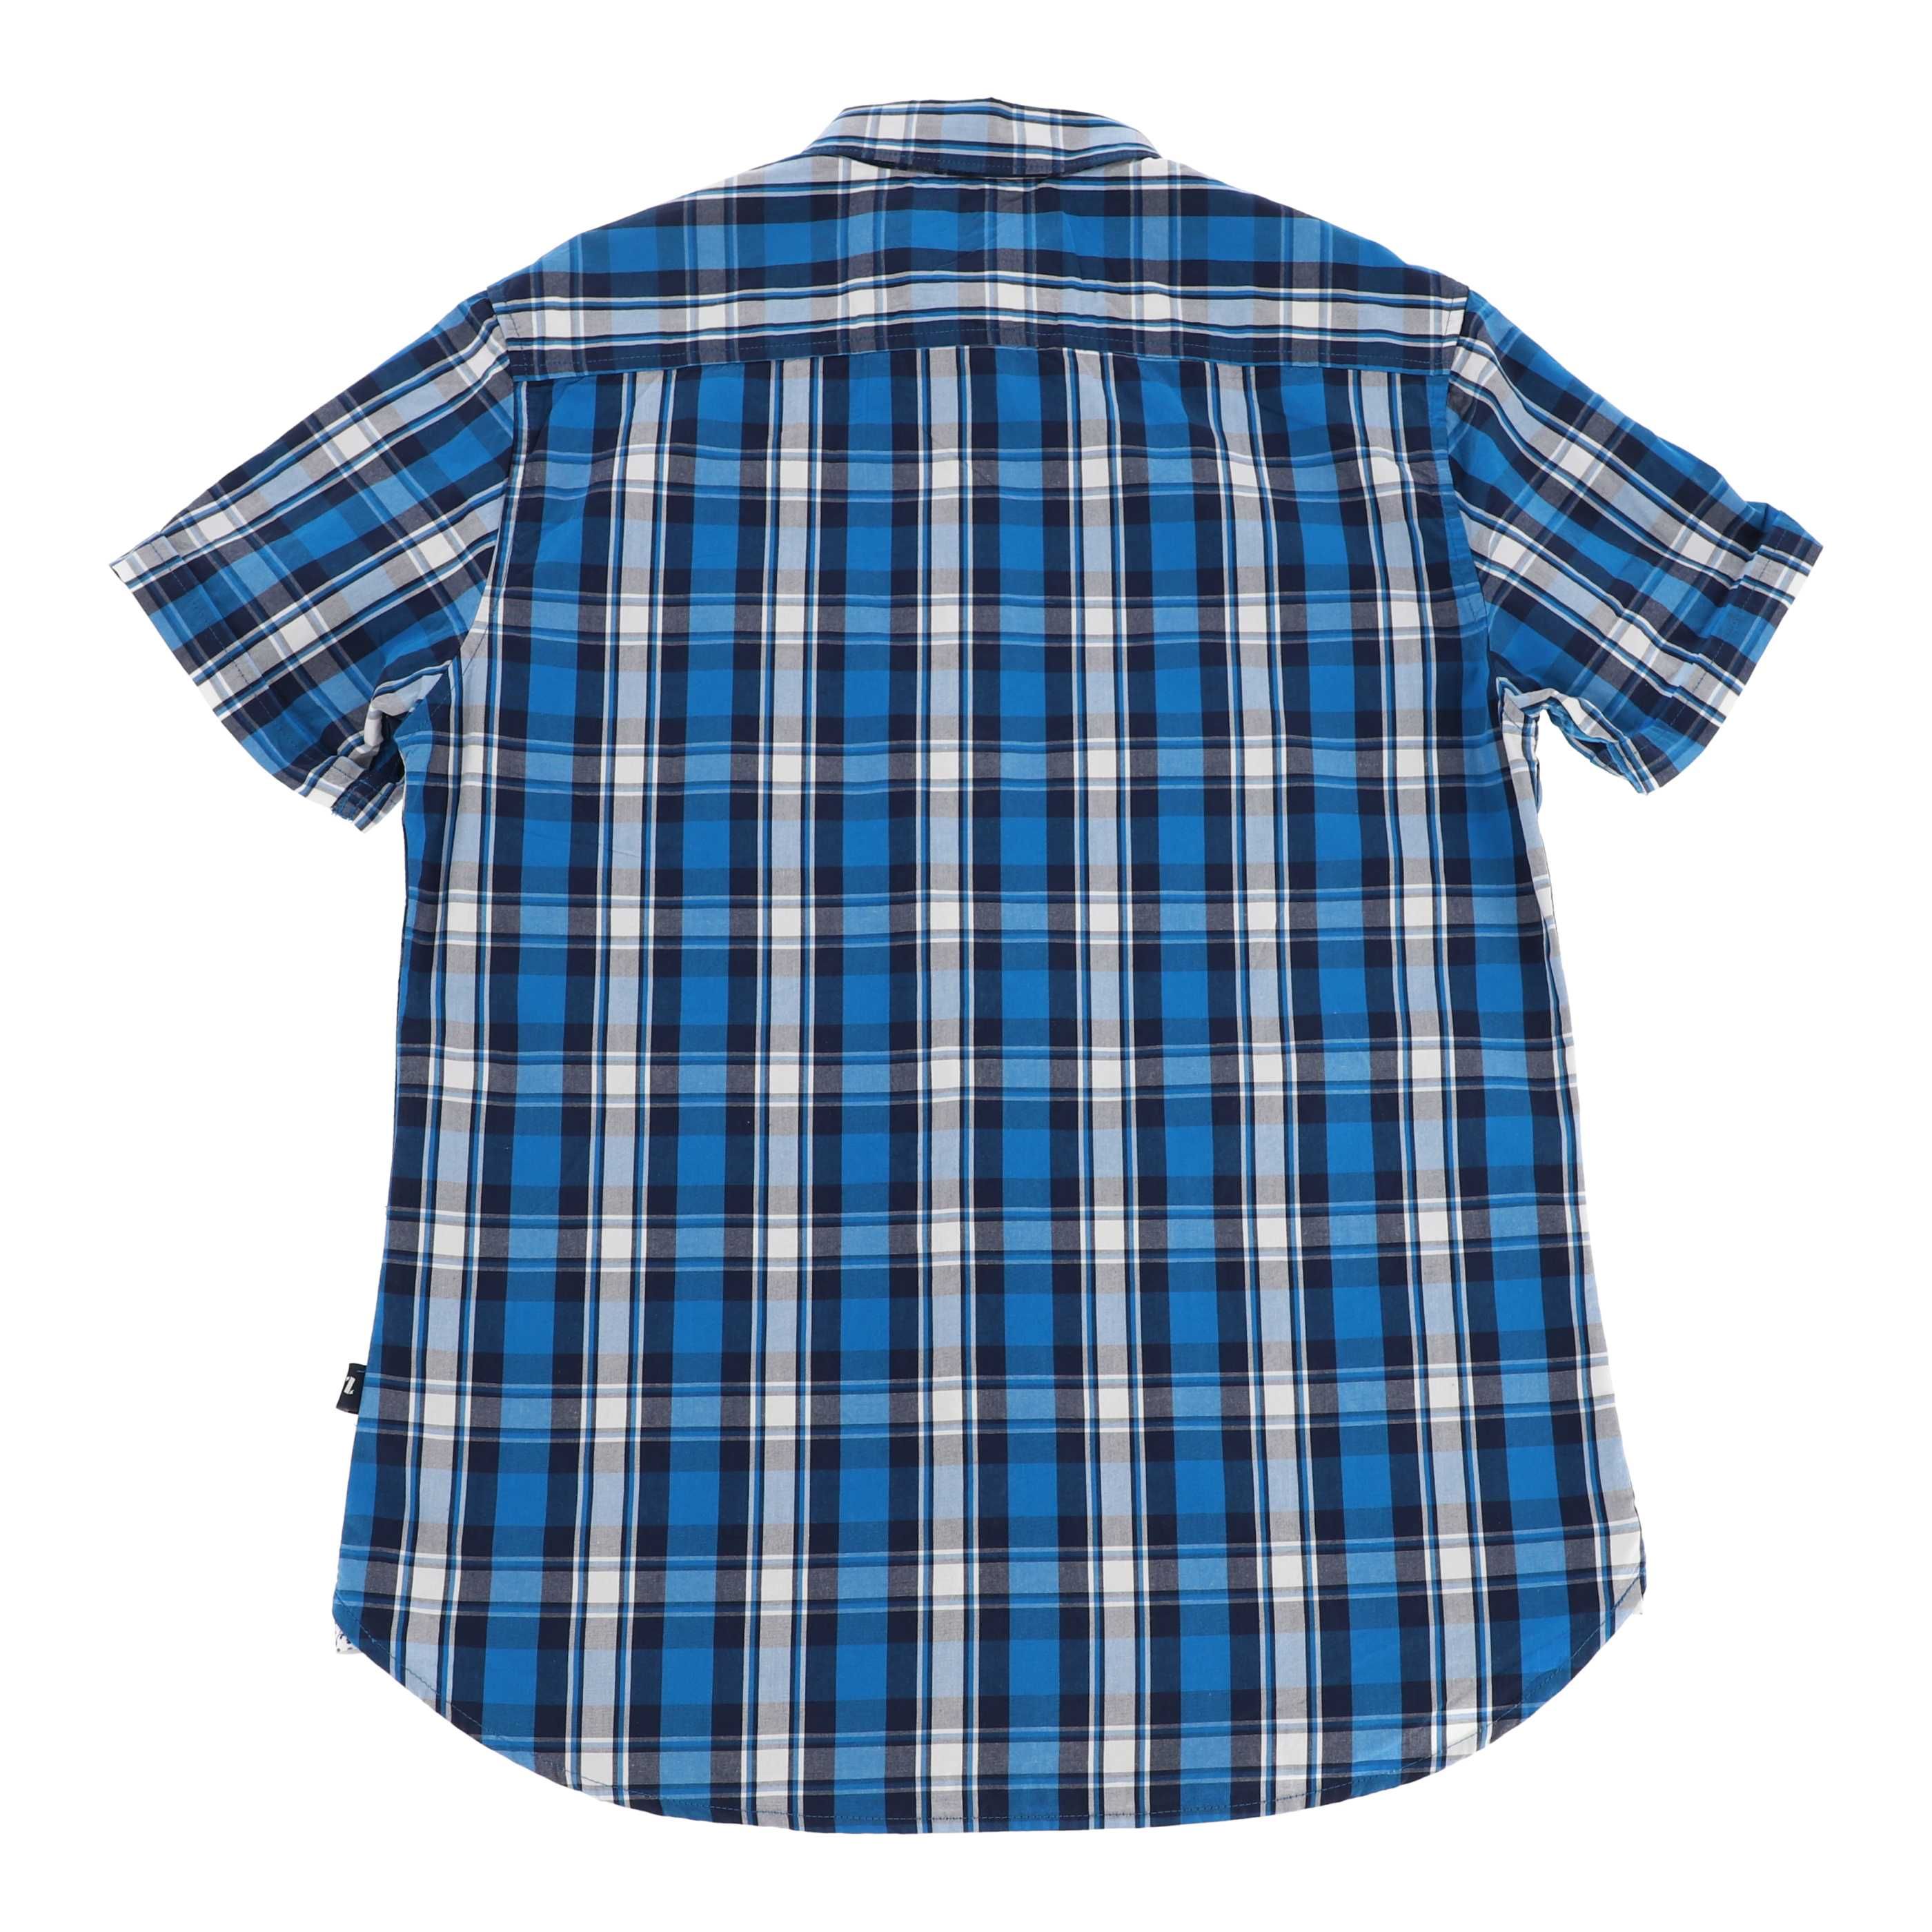 Niebieska koszula marki On The Road, rozmiar 38